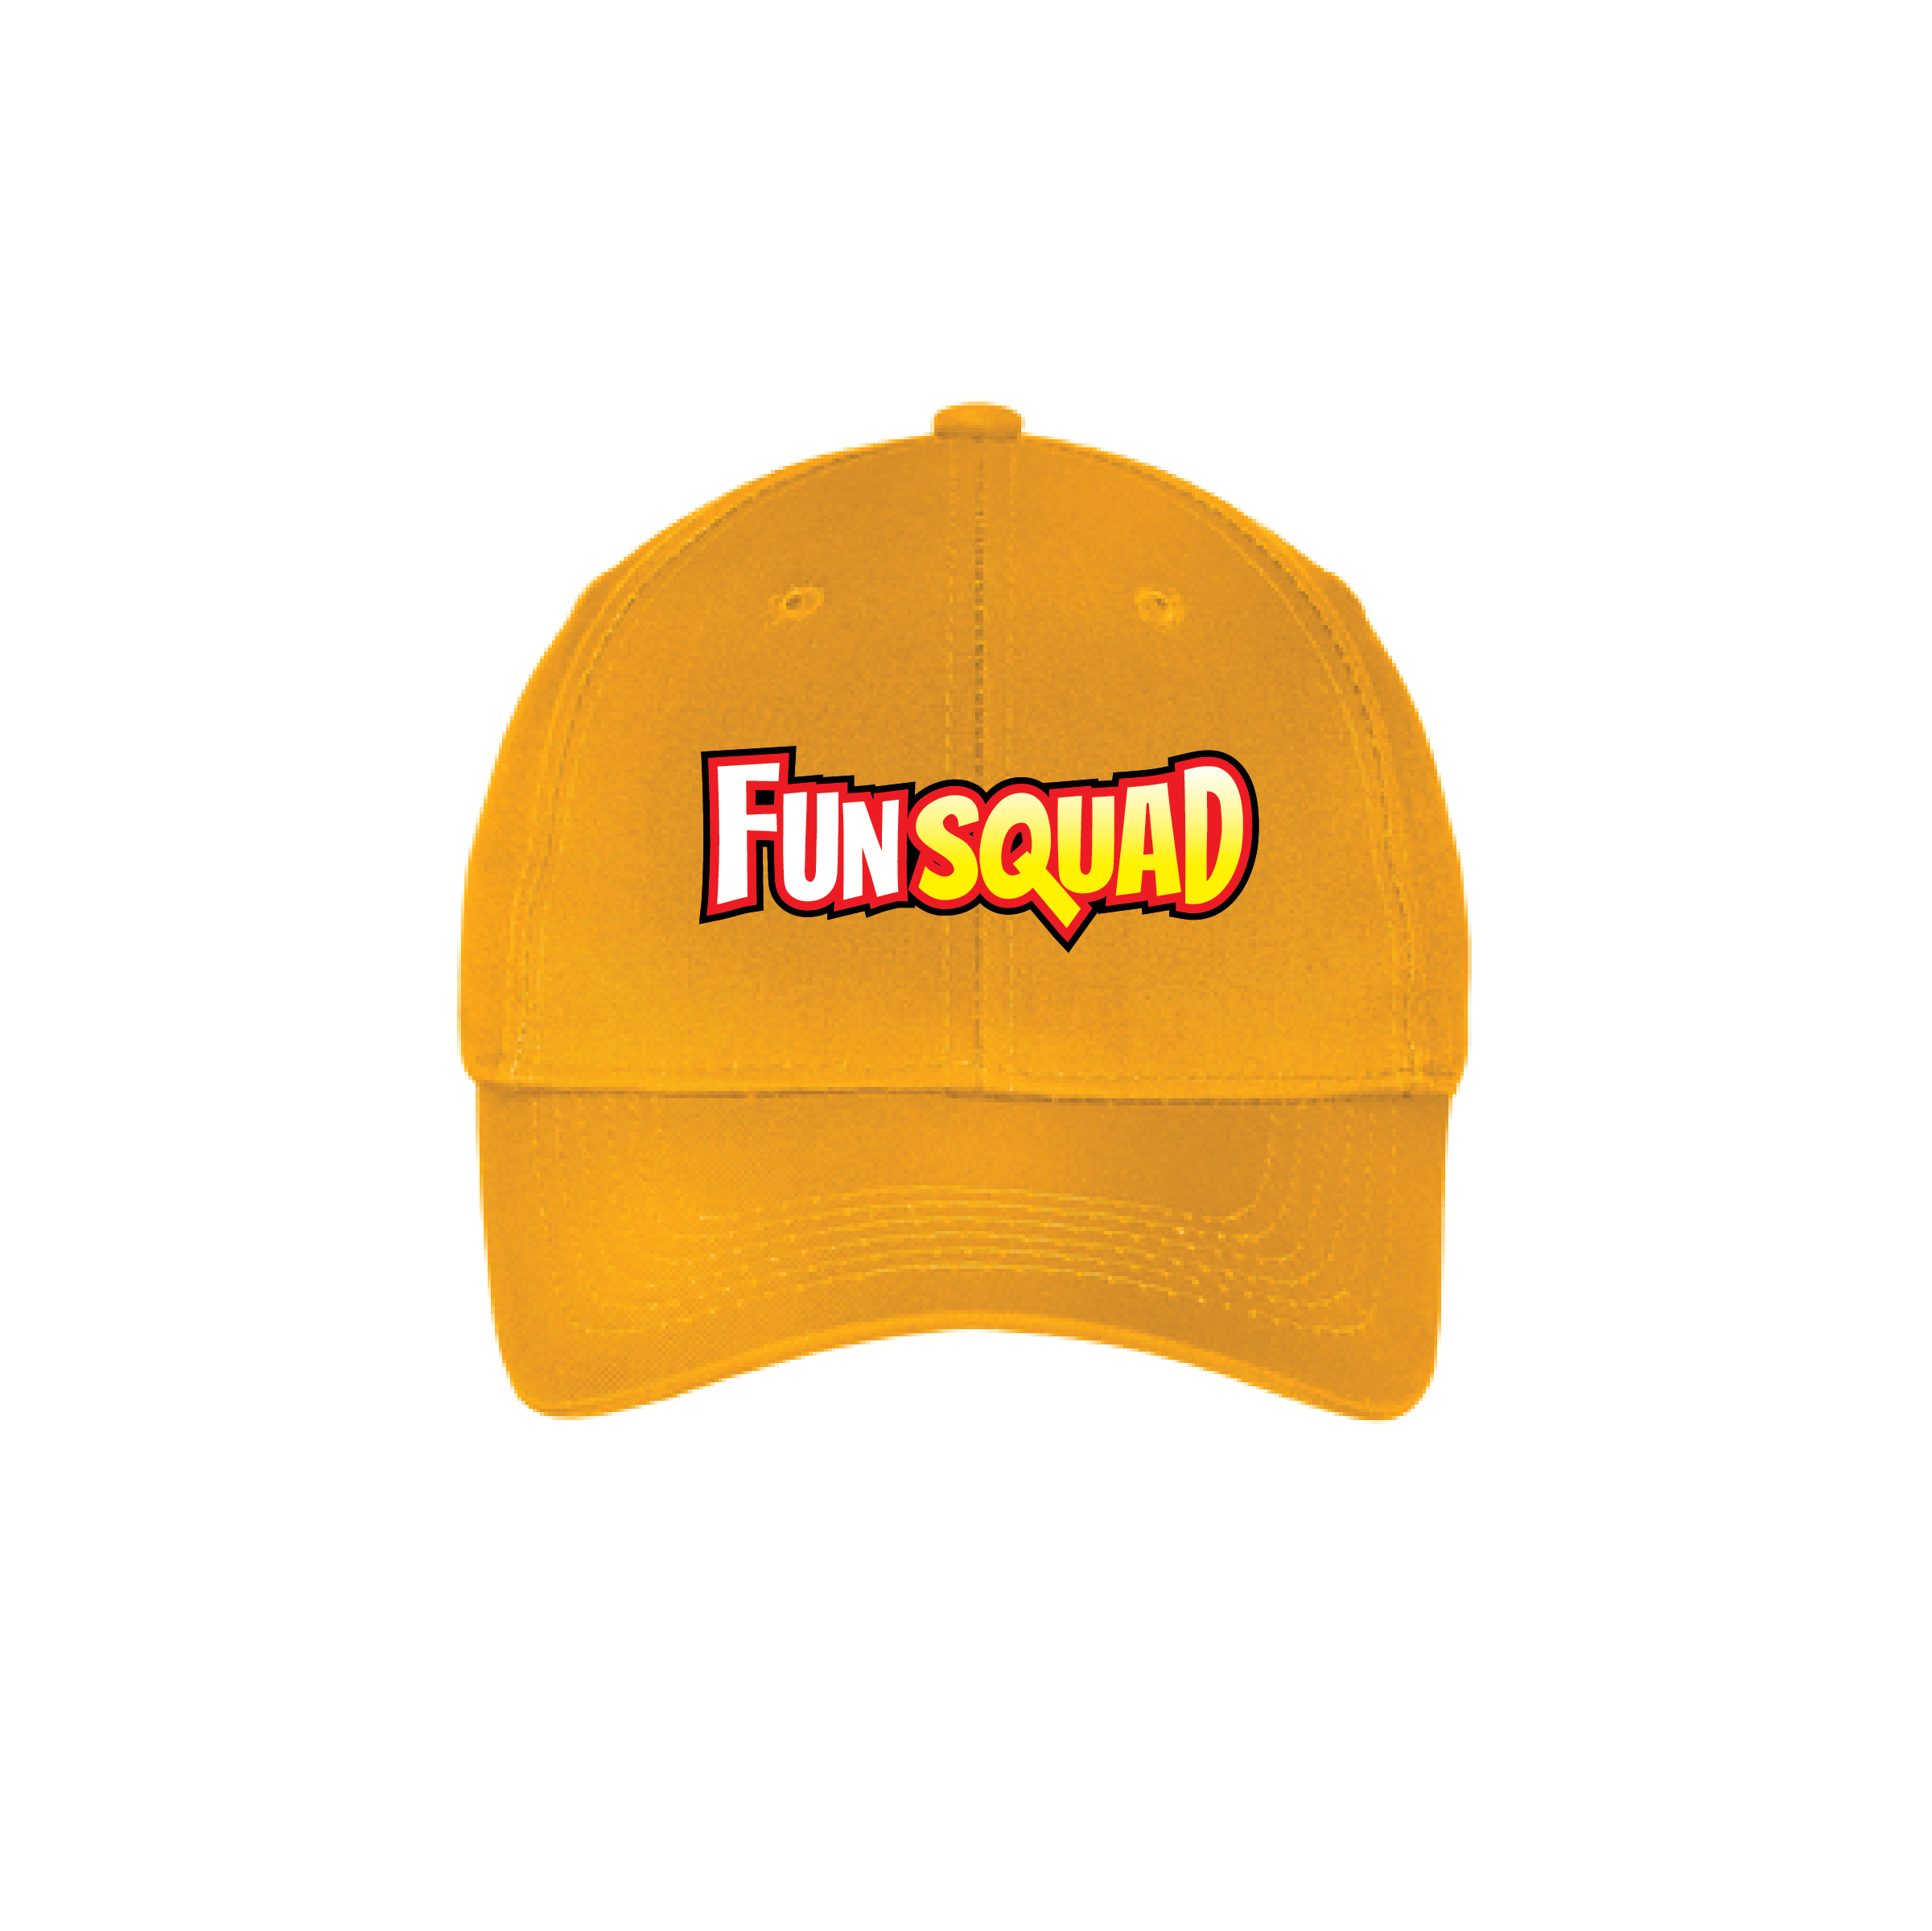 Hat Curved Brim - Fun Squad Red